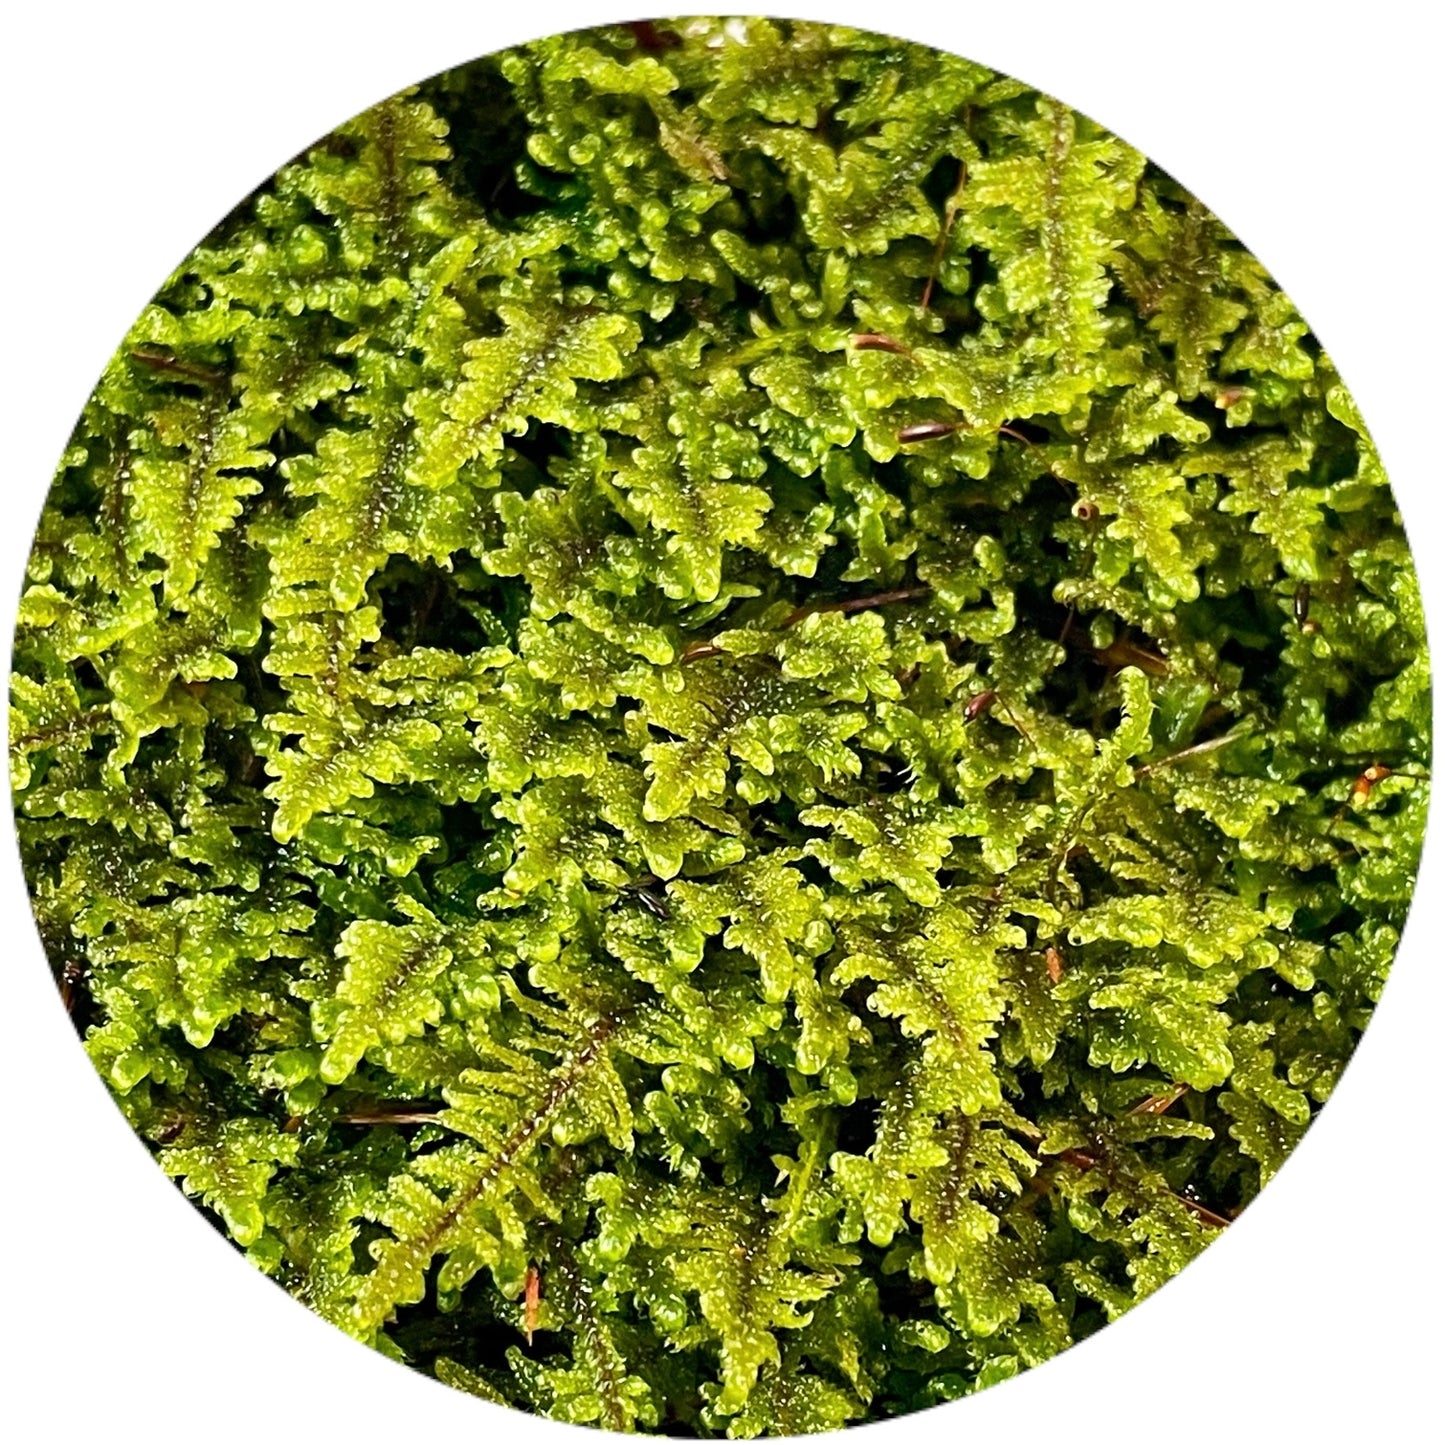 Greater Plait Moss - Hypnum curvifolium